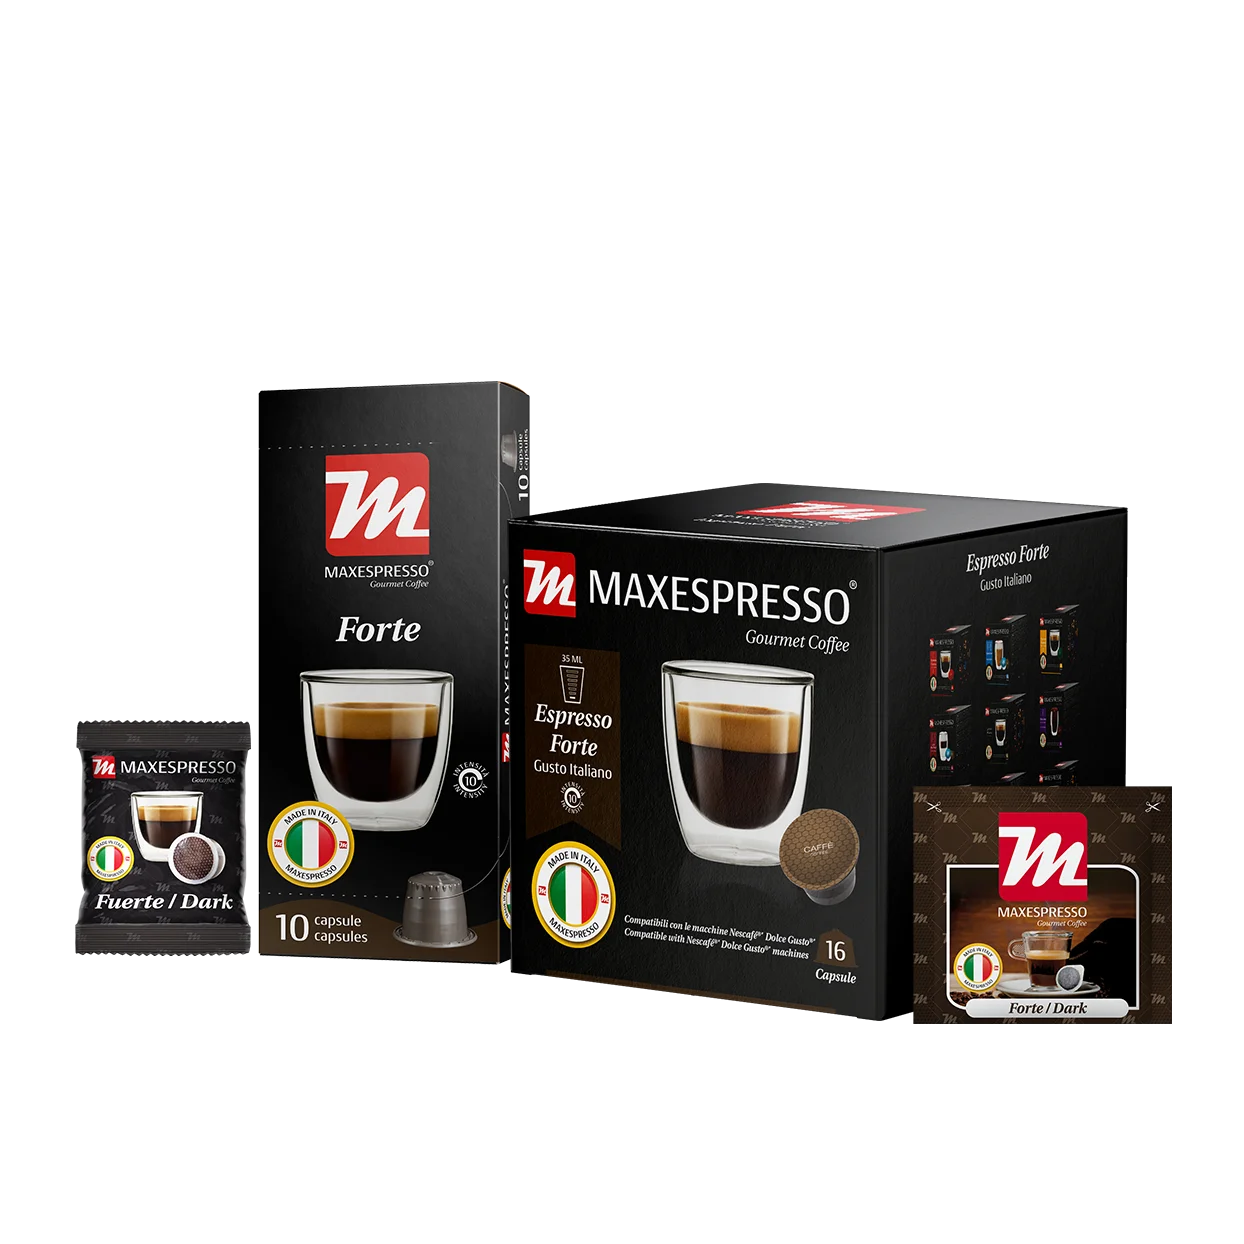 Maxespresso Forte